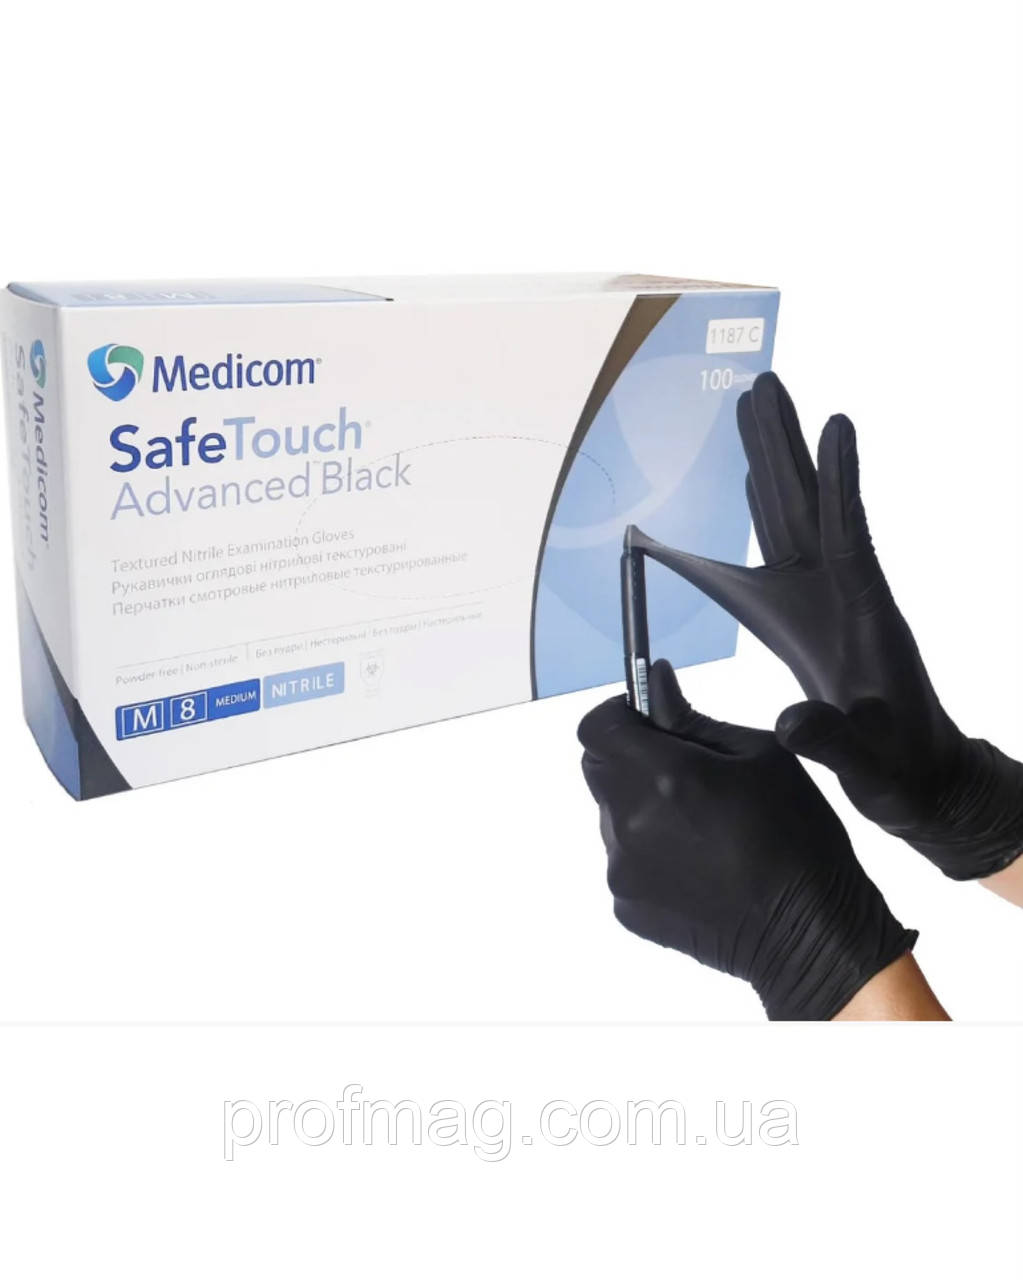 Міцні рукавички Medicom (Медиком)100шт 1187С, медичні рукавиці,чорні нітрилові, щільні 5,5 г Размер М!